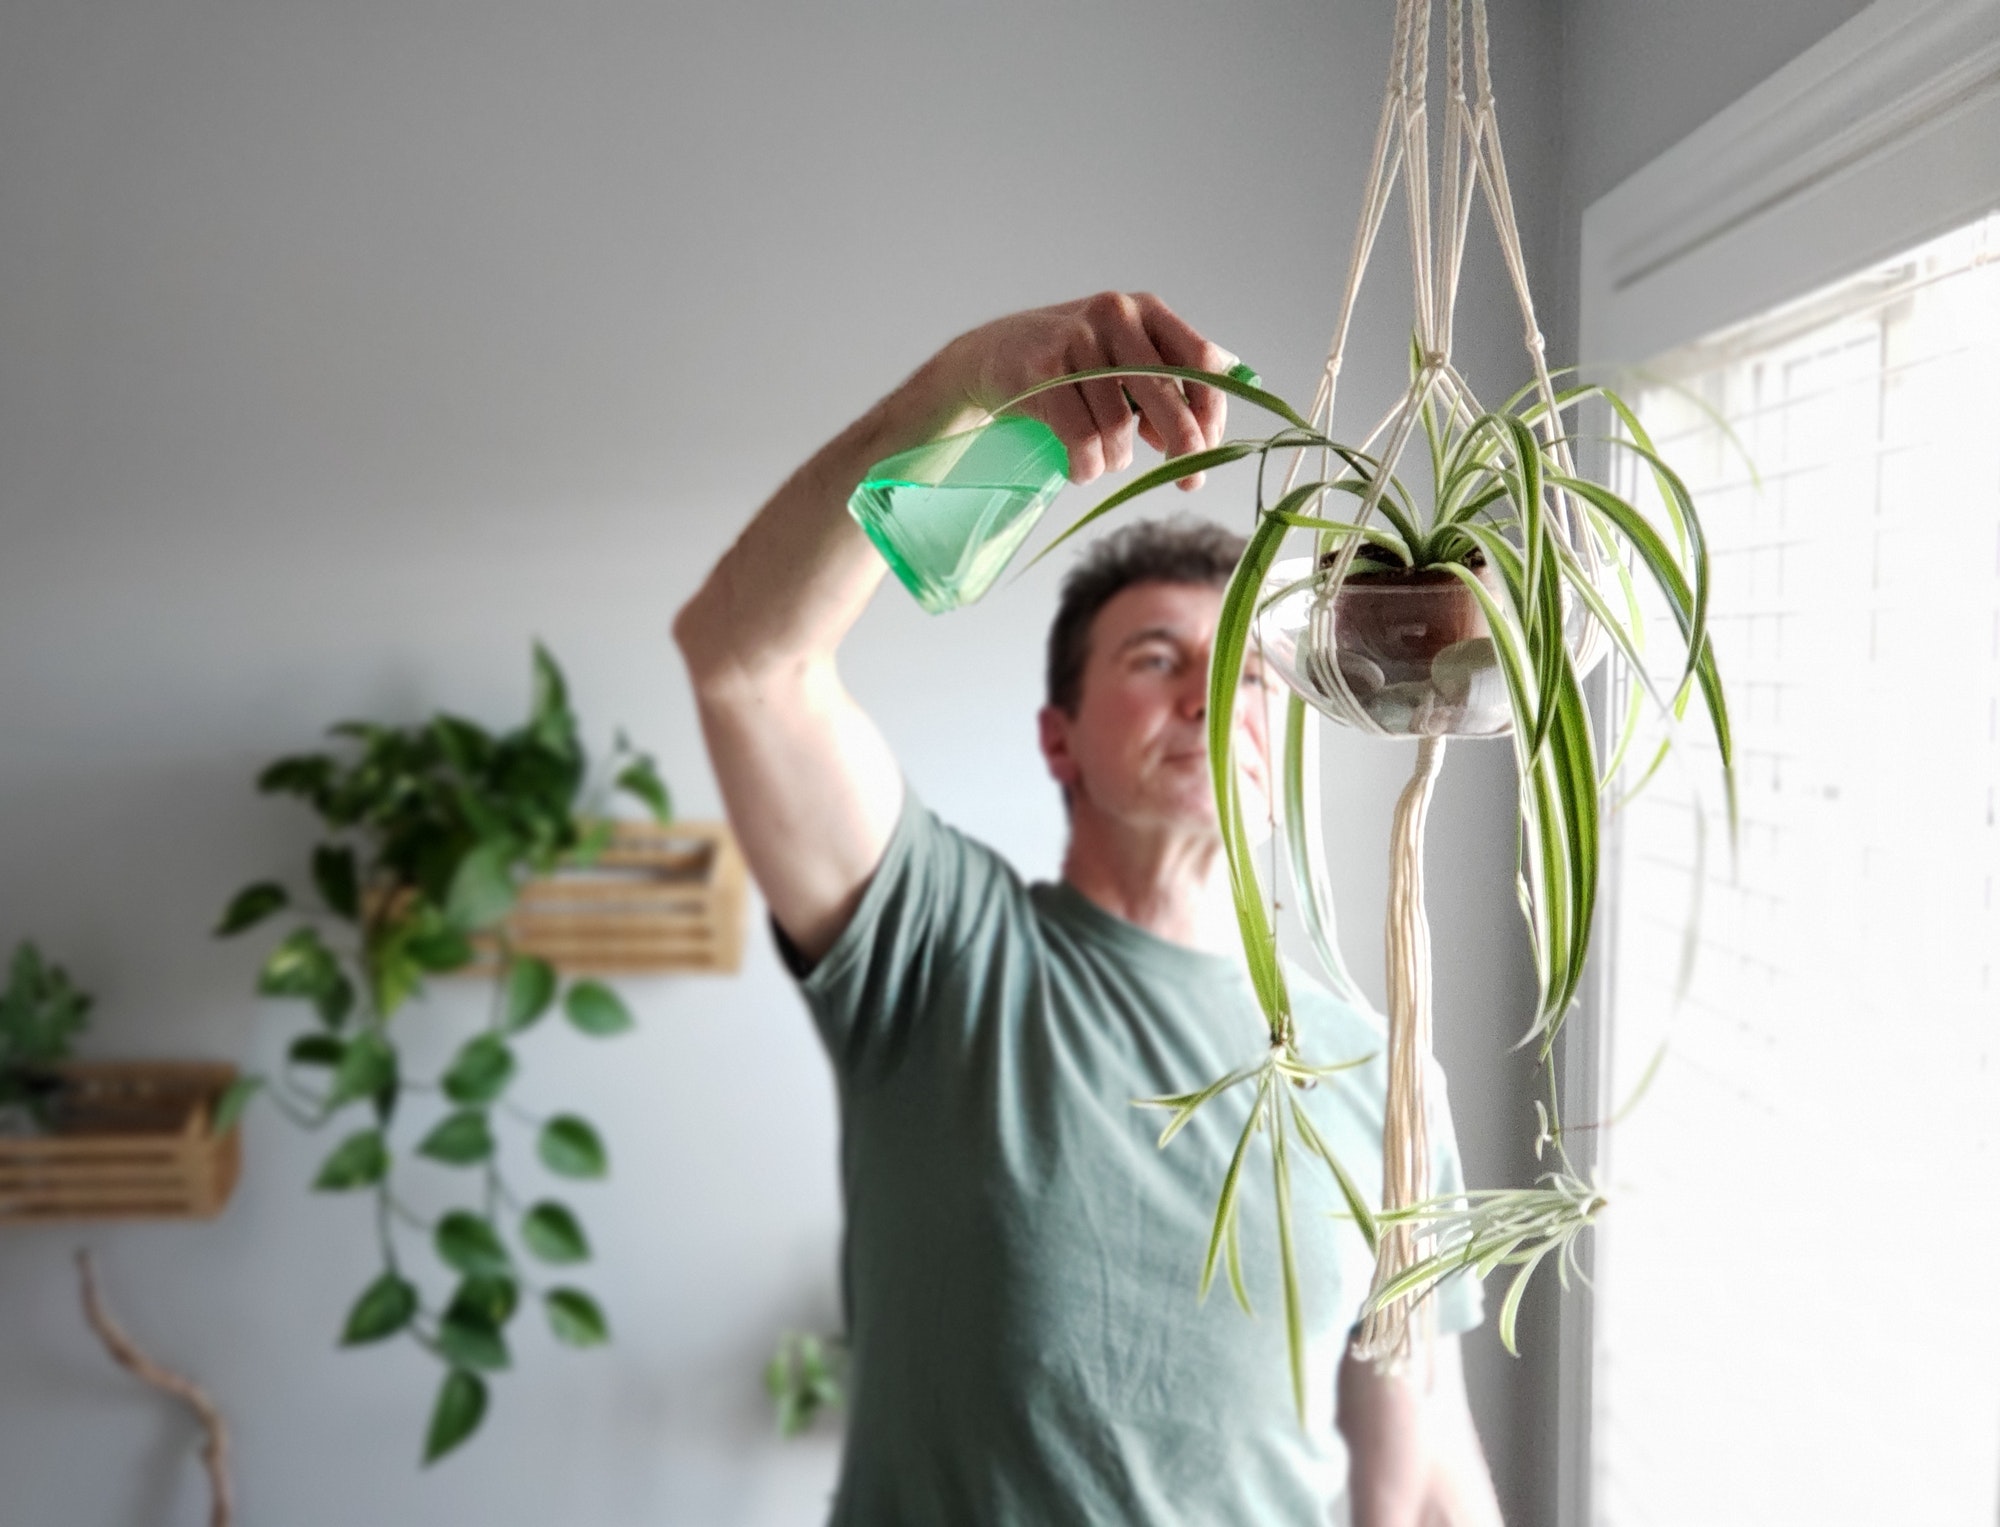 Men doing chores, watering indoor plants, man growing plants